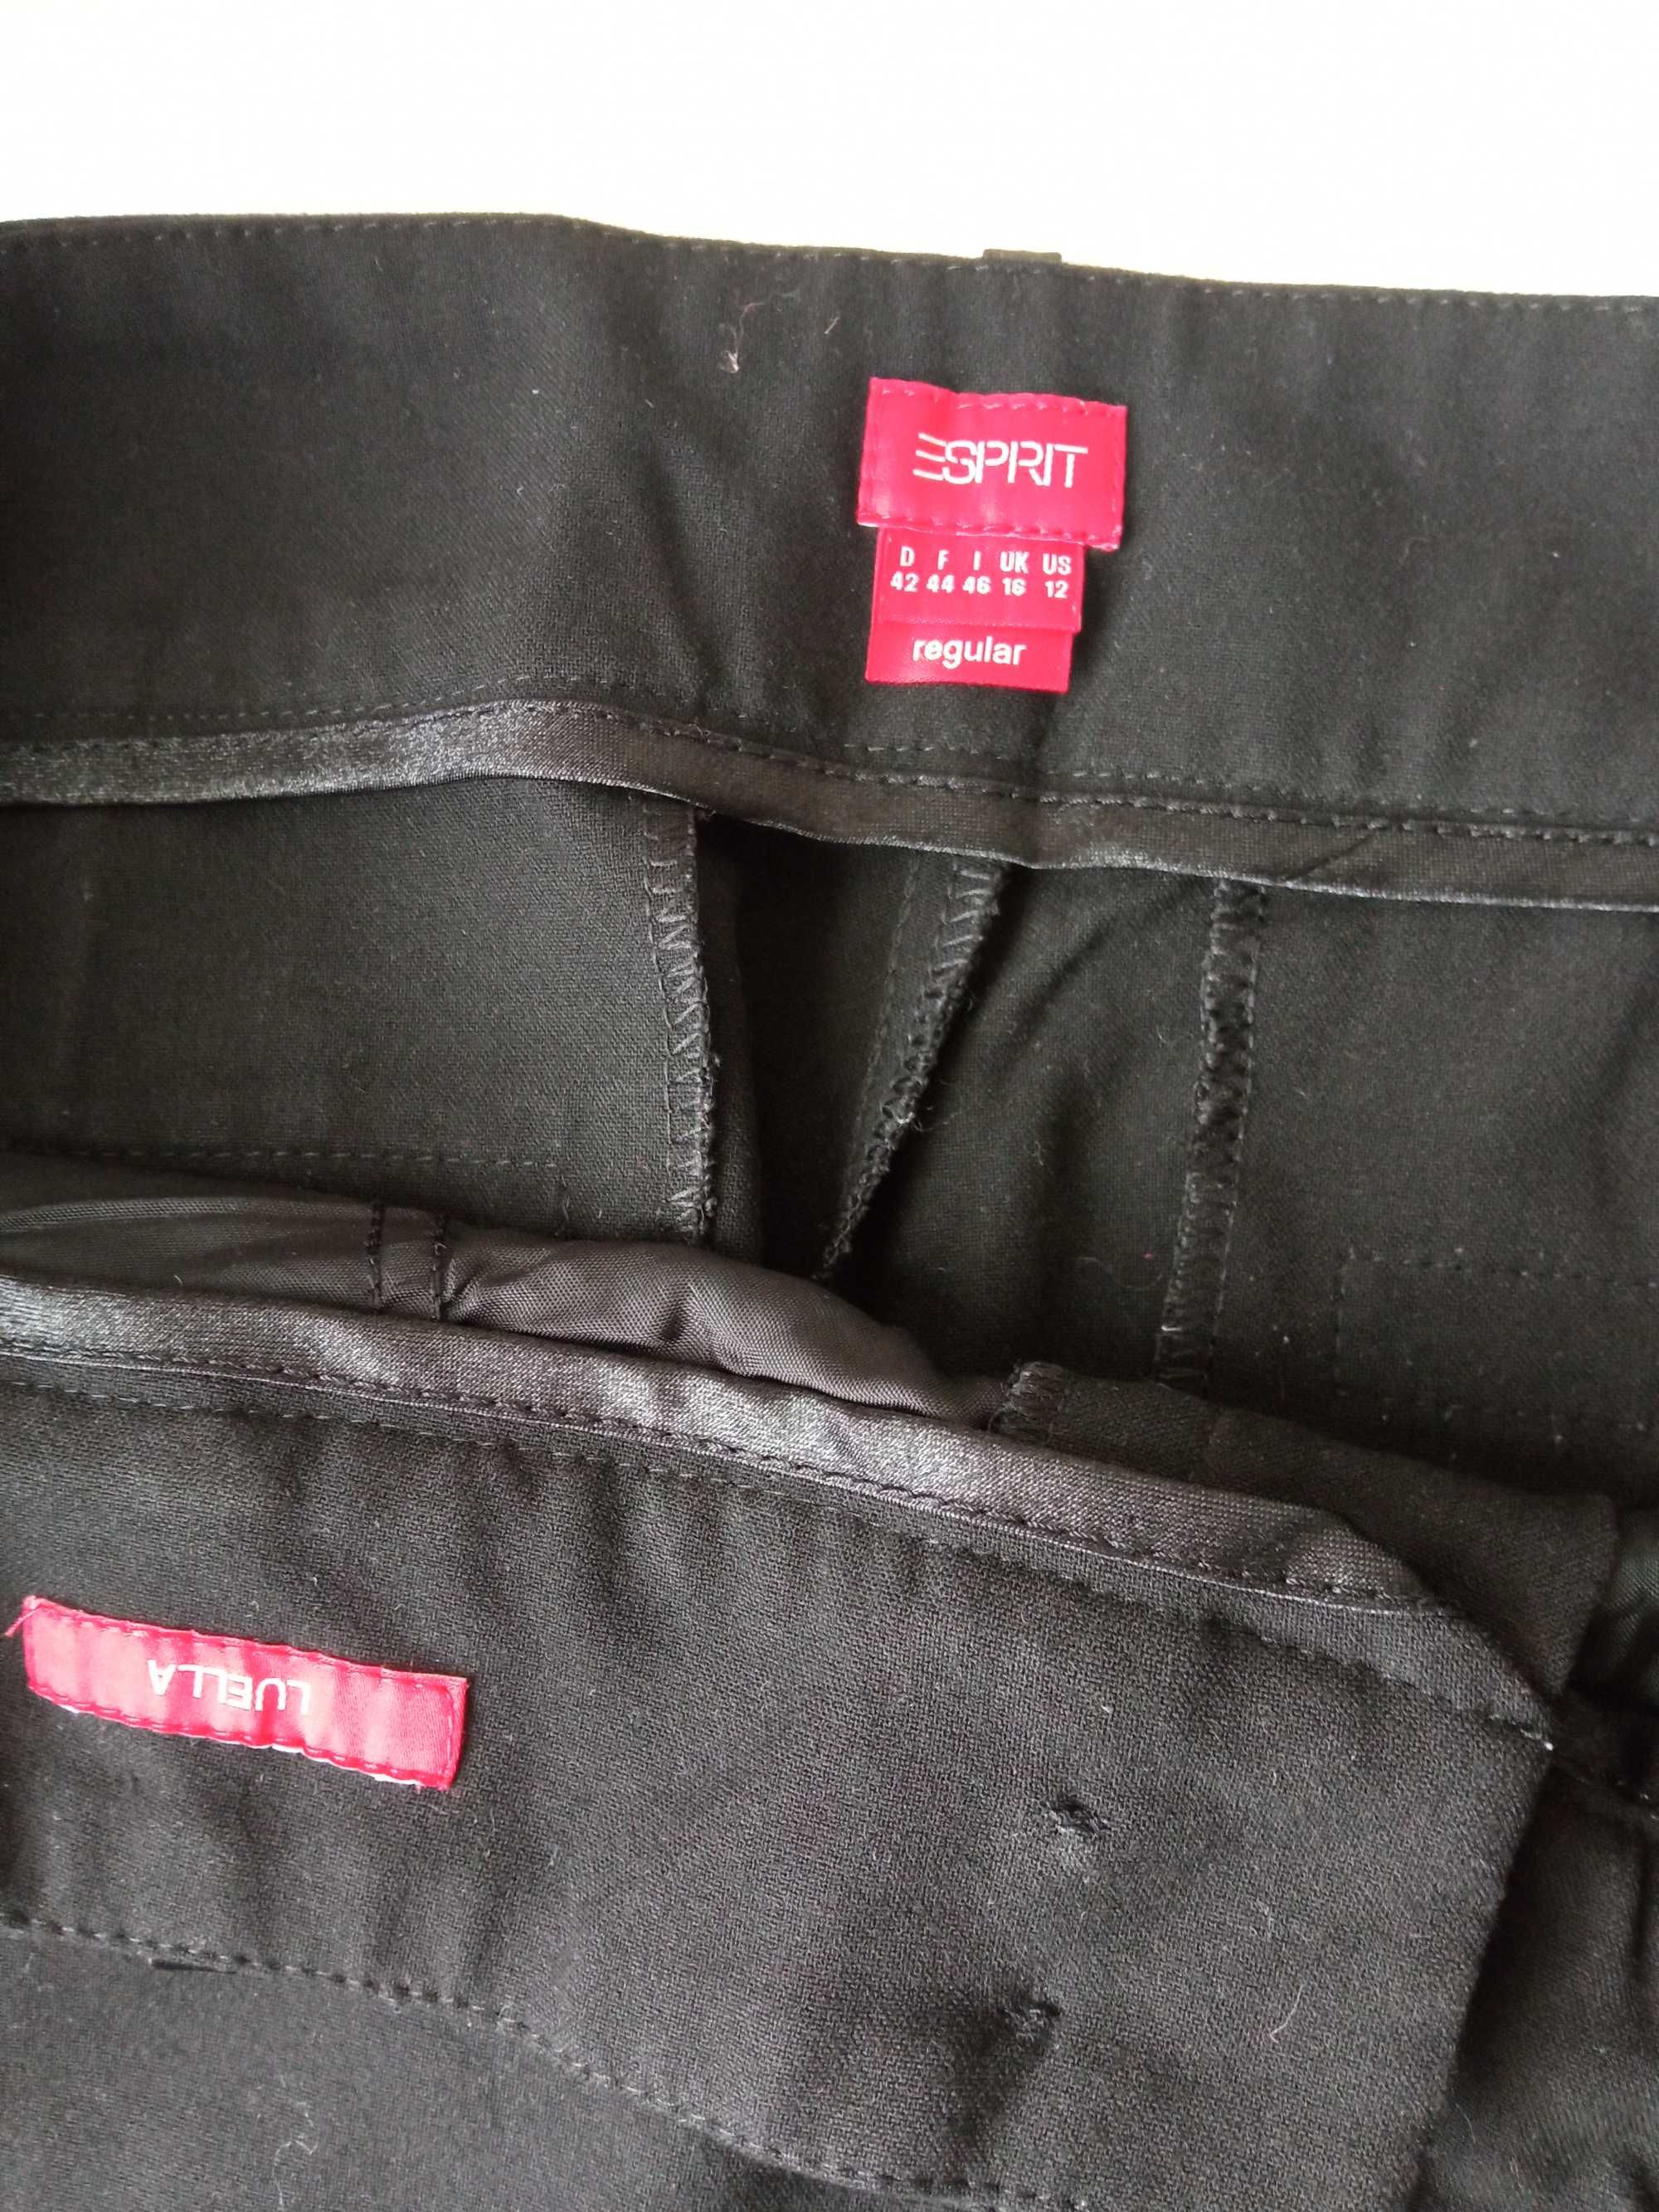 Esprit spodnie damskie ubraniowe szeroka nogawka r 42 pas 86-92cm